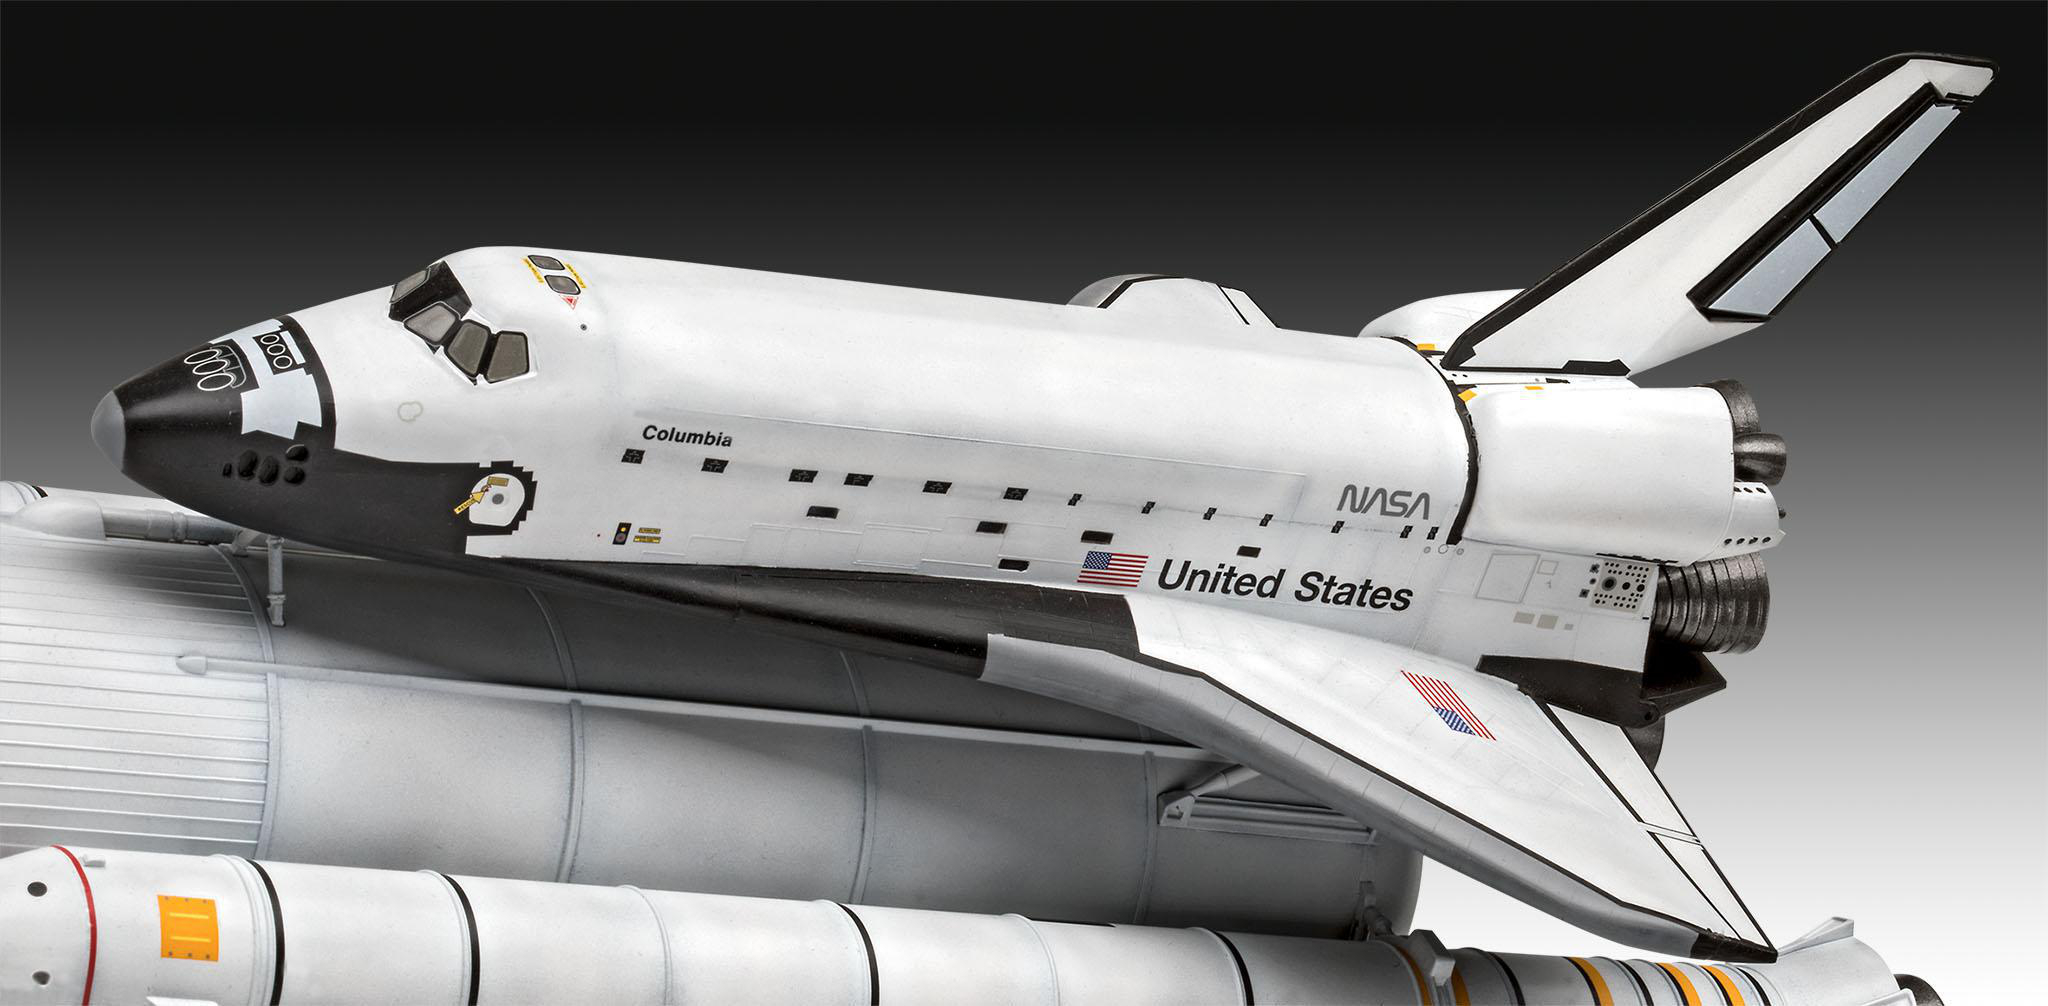 REVELL Geschenkset Space Shuttle& Booster Rockets, Modellbausatz, Mehrfarbig 40th